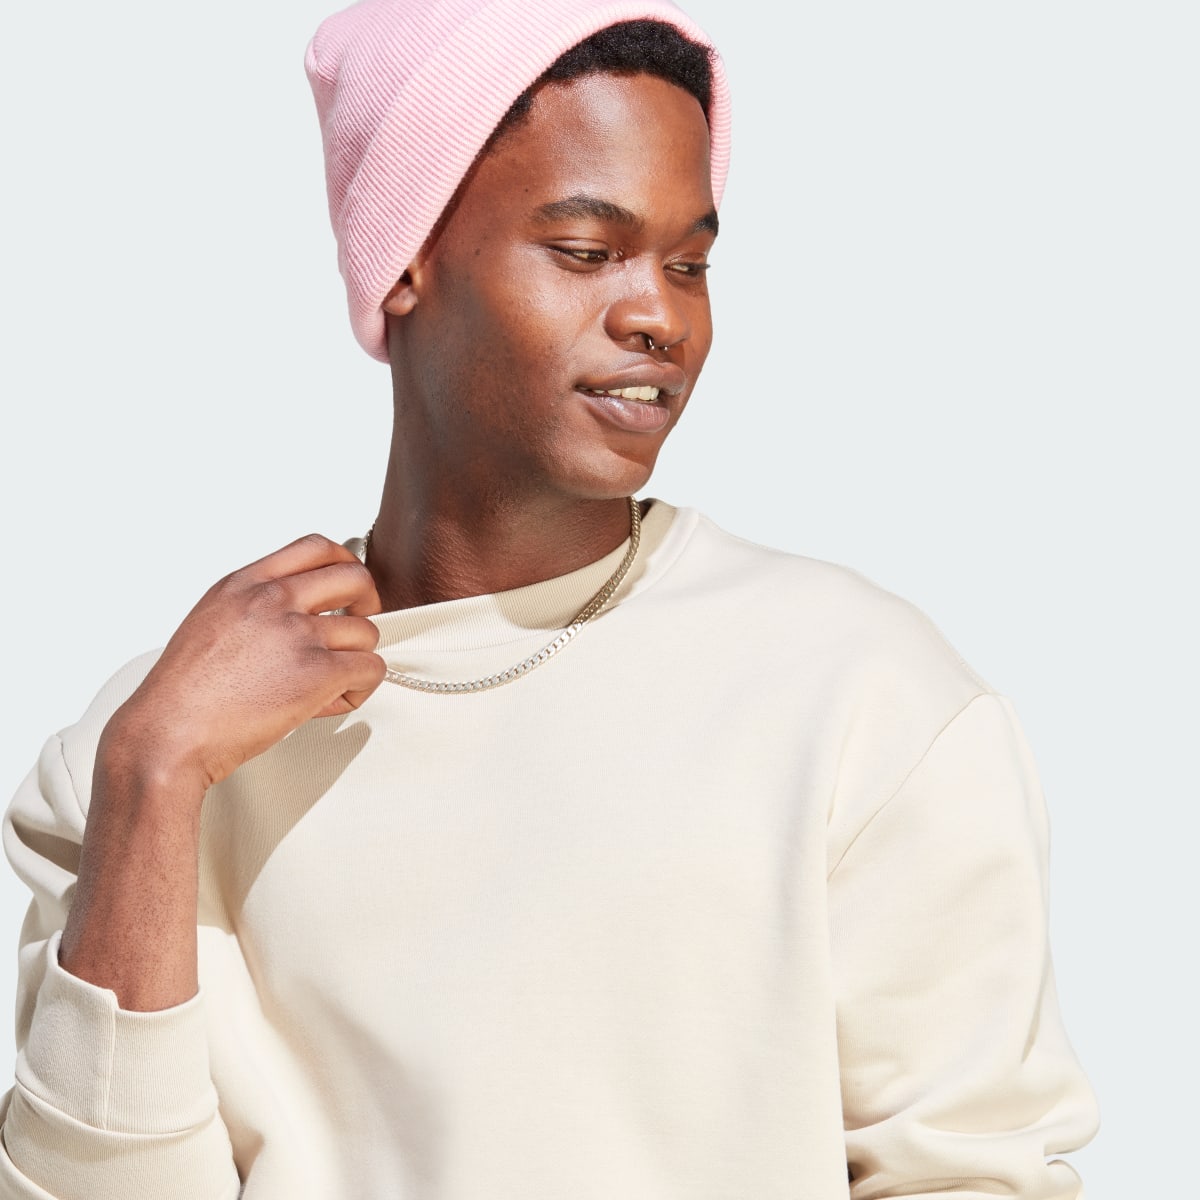 Adidas Lounge Fleece Sweatshirt. 6